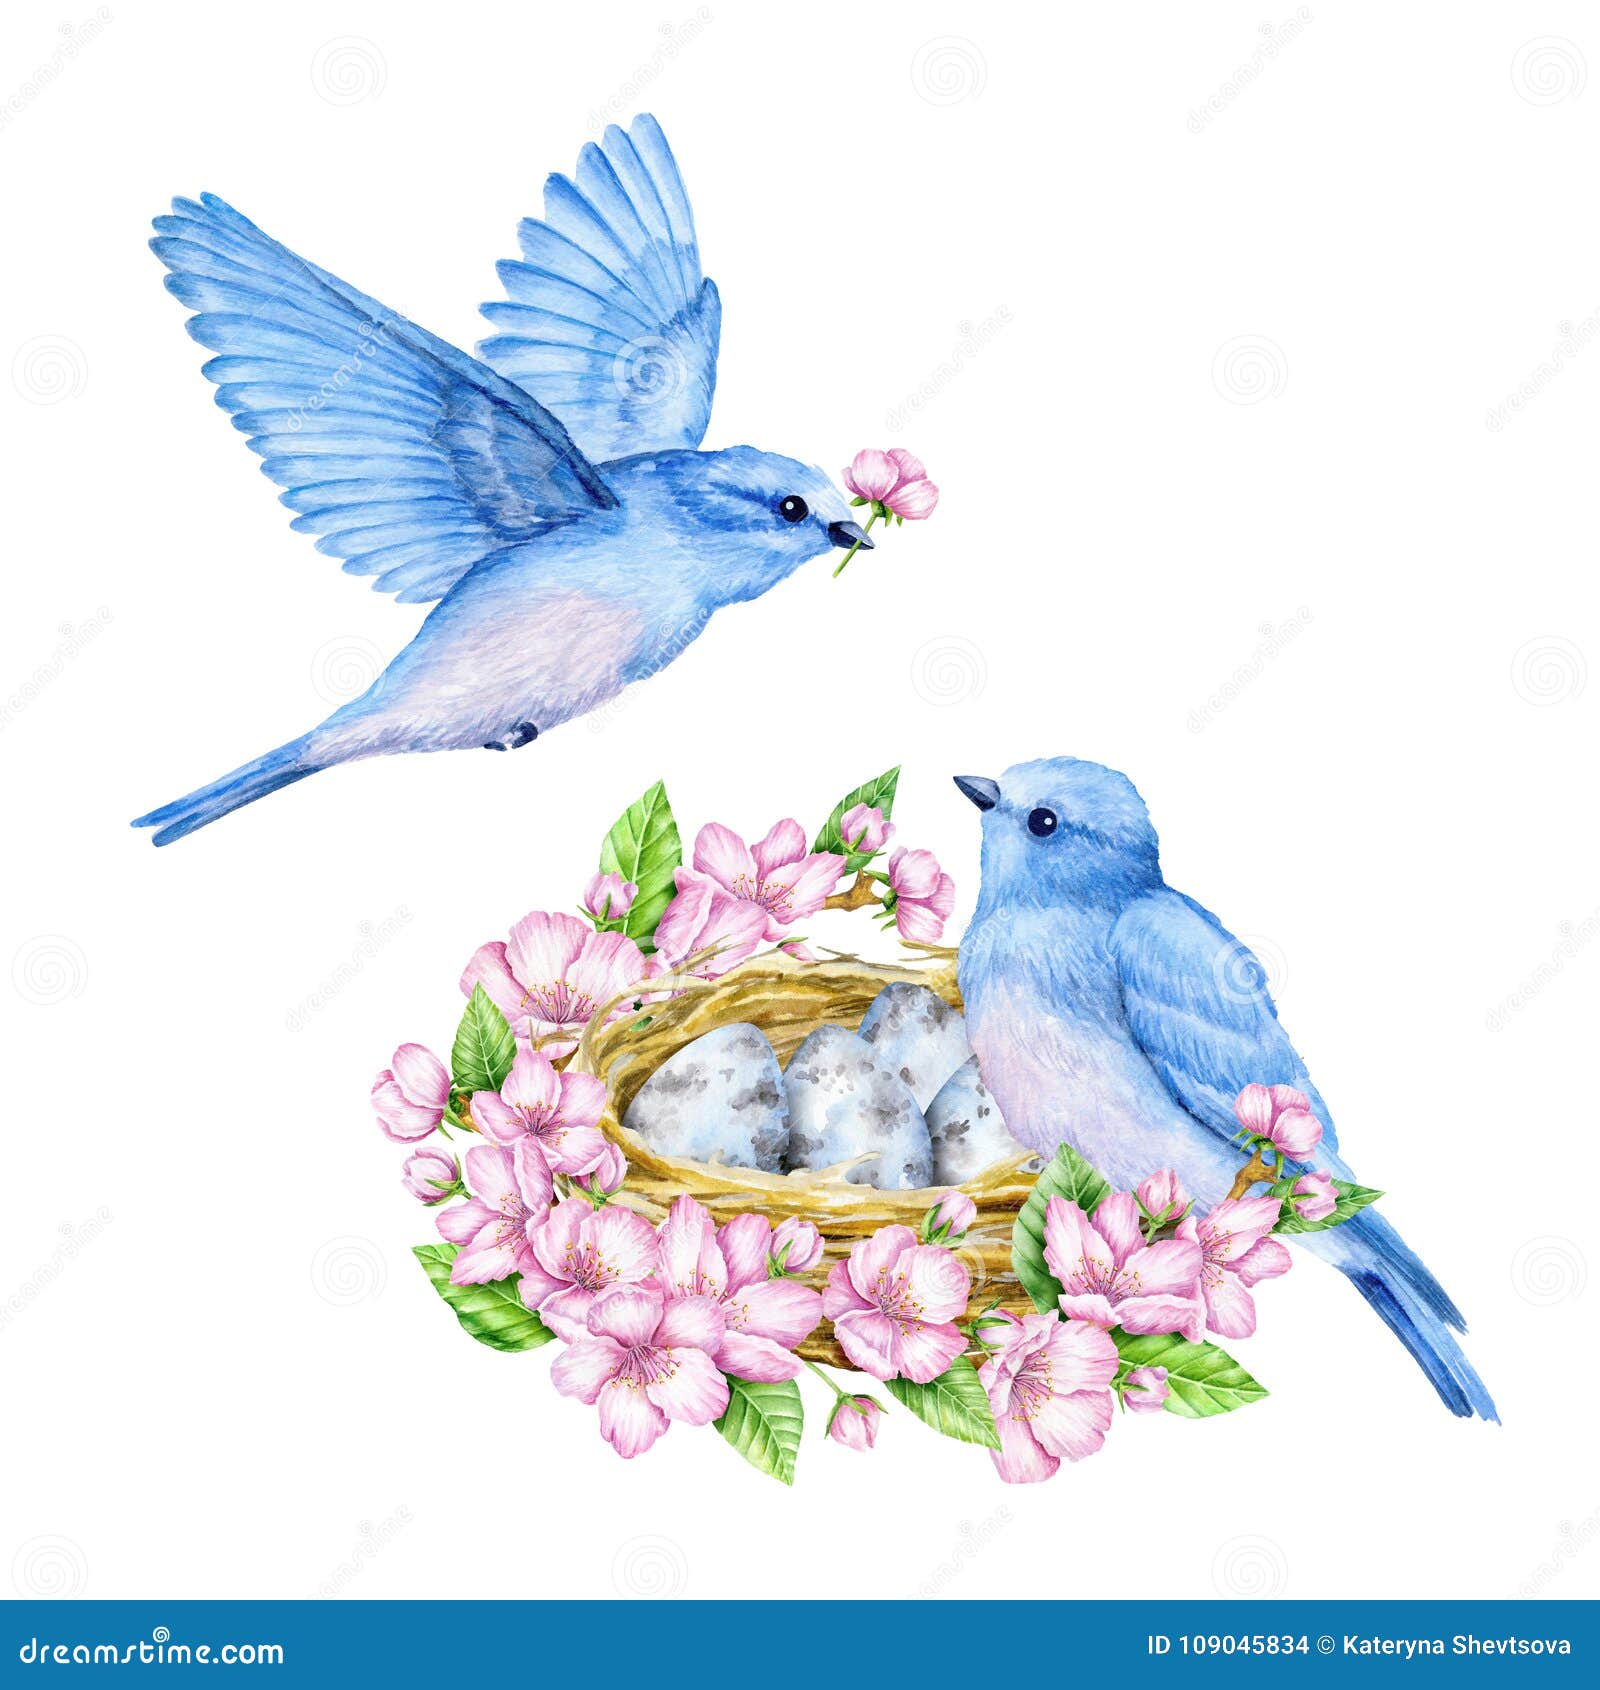 Featured image of post Passaros Azuis - X posid lançou esta imagem pássaros azuis do amor sob licença de domínio público.